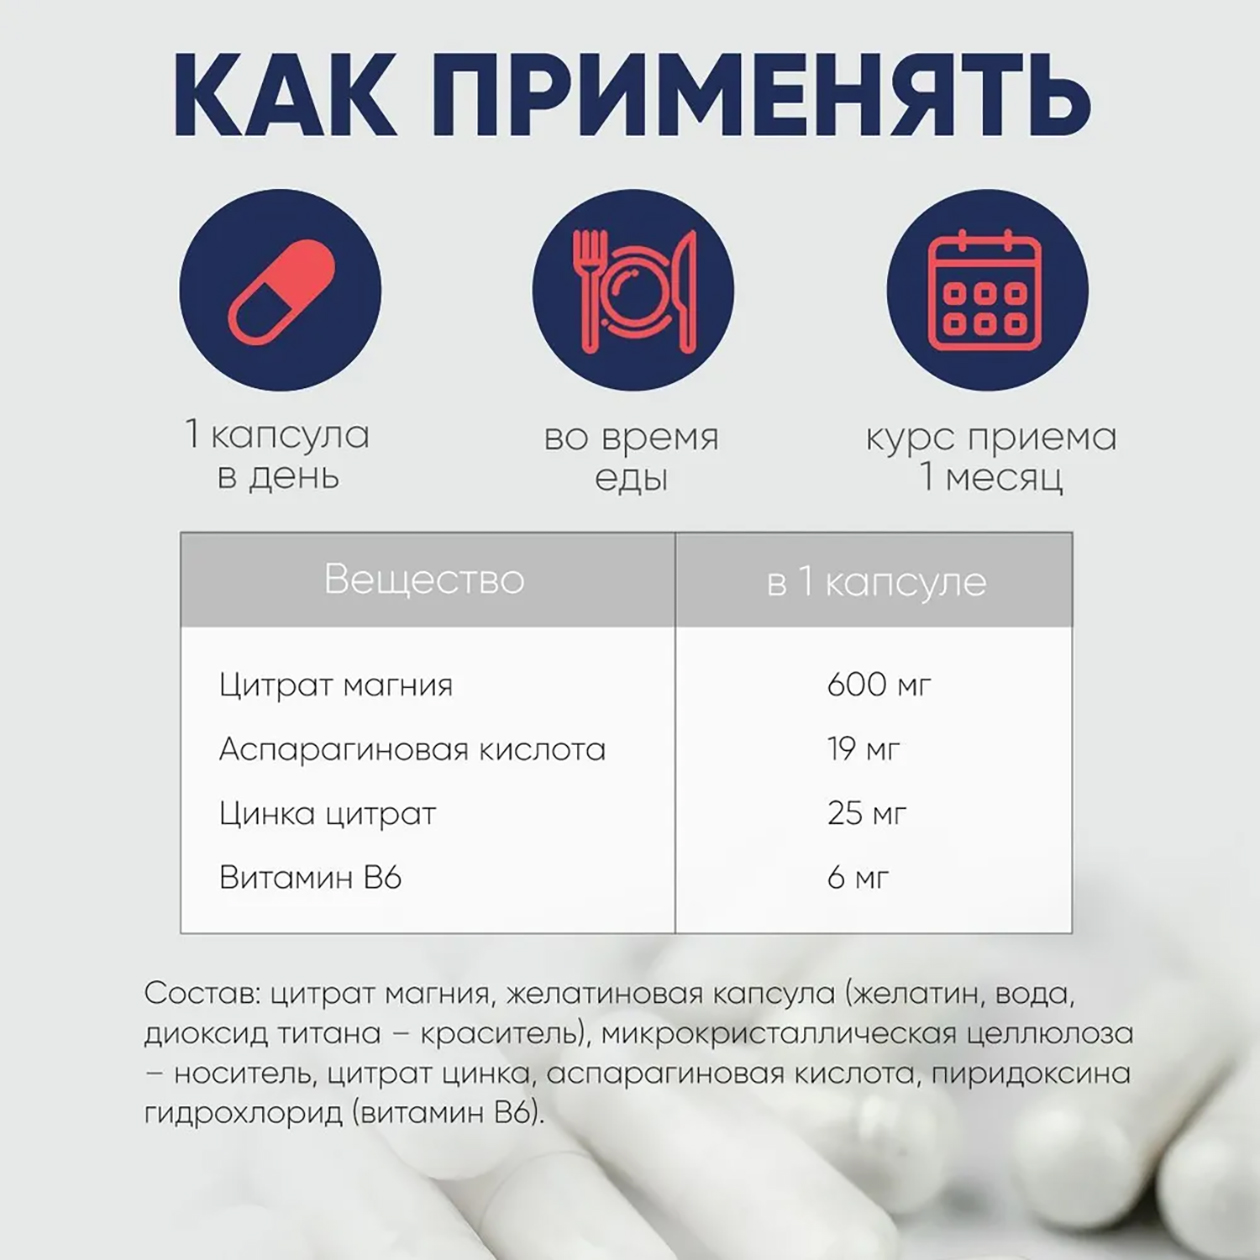 Часто добавки содержат в два‑три раза больше рекомендуемой нормы веществ. Источник: ozon.ru